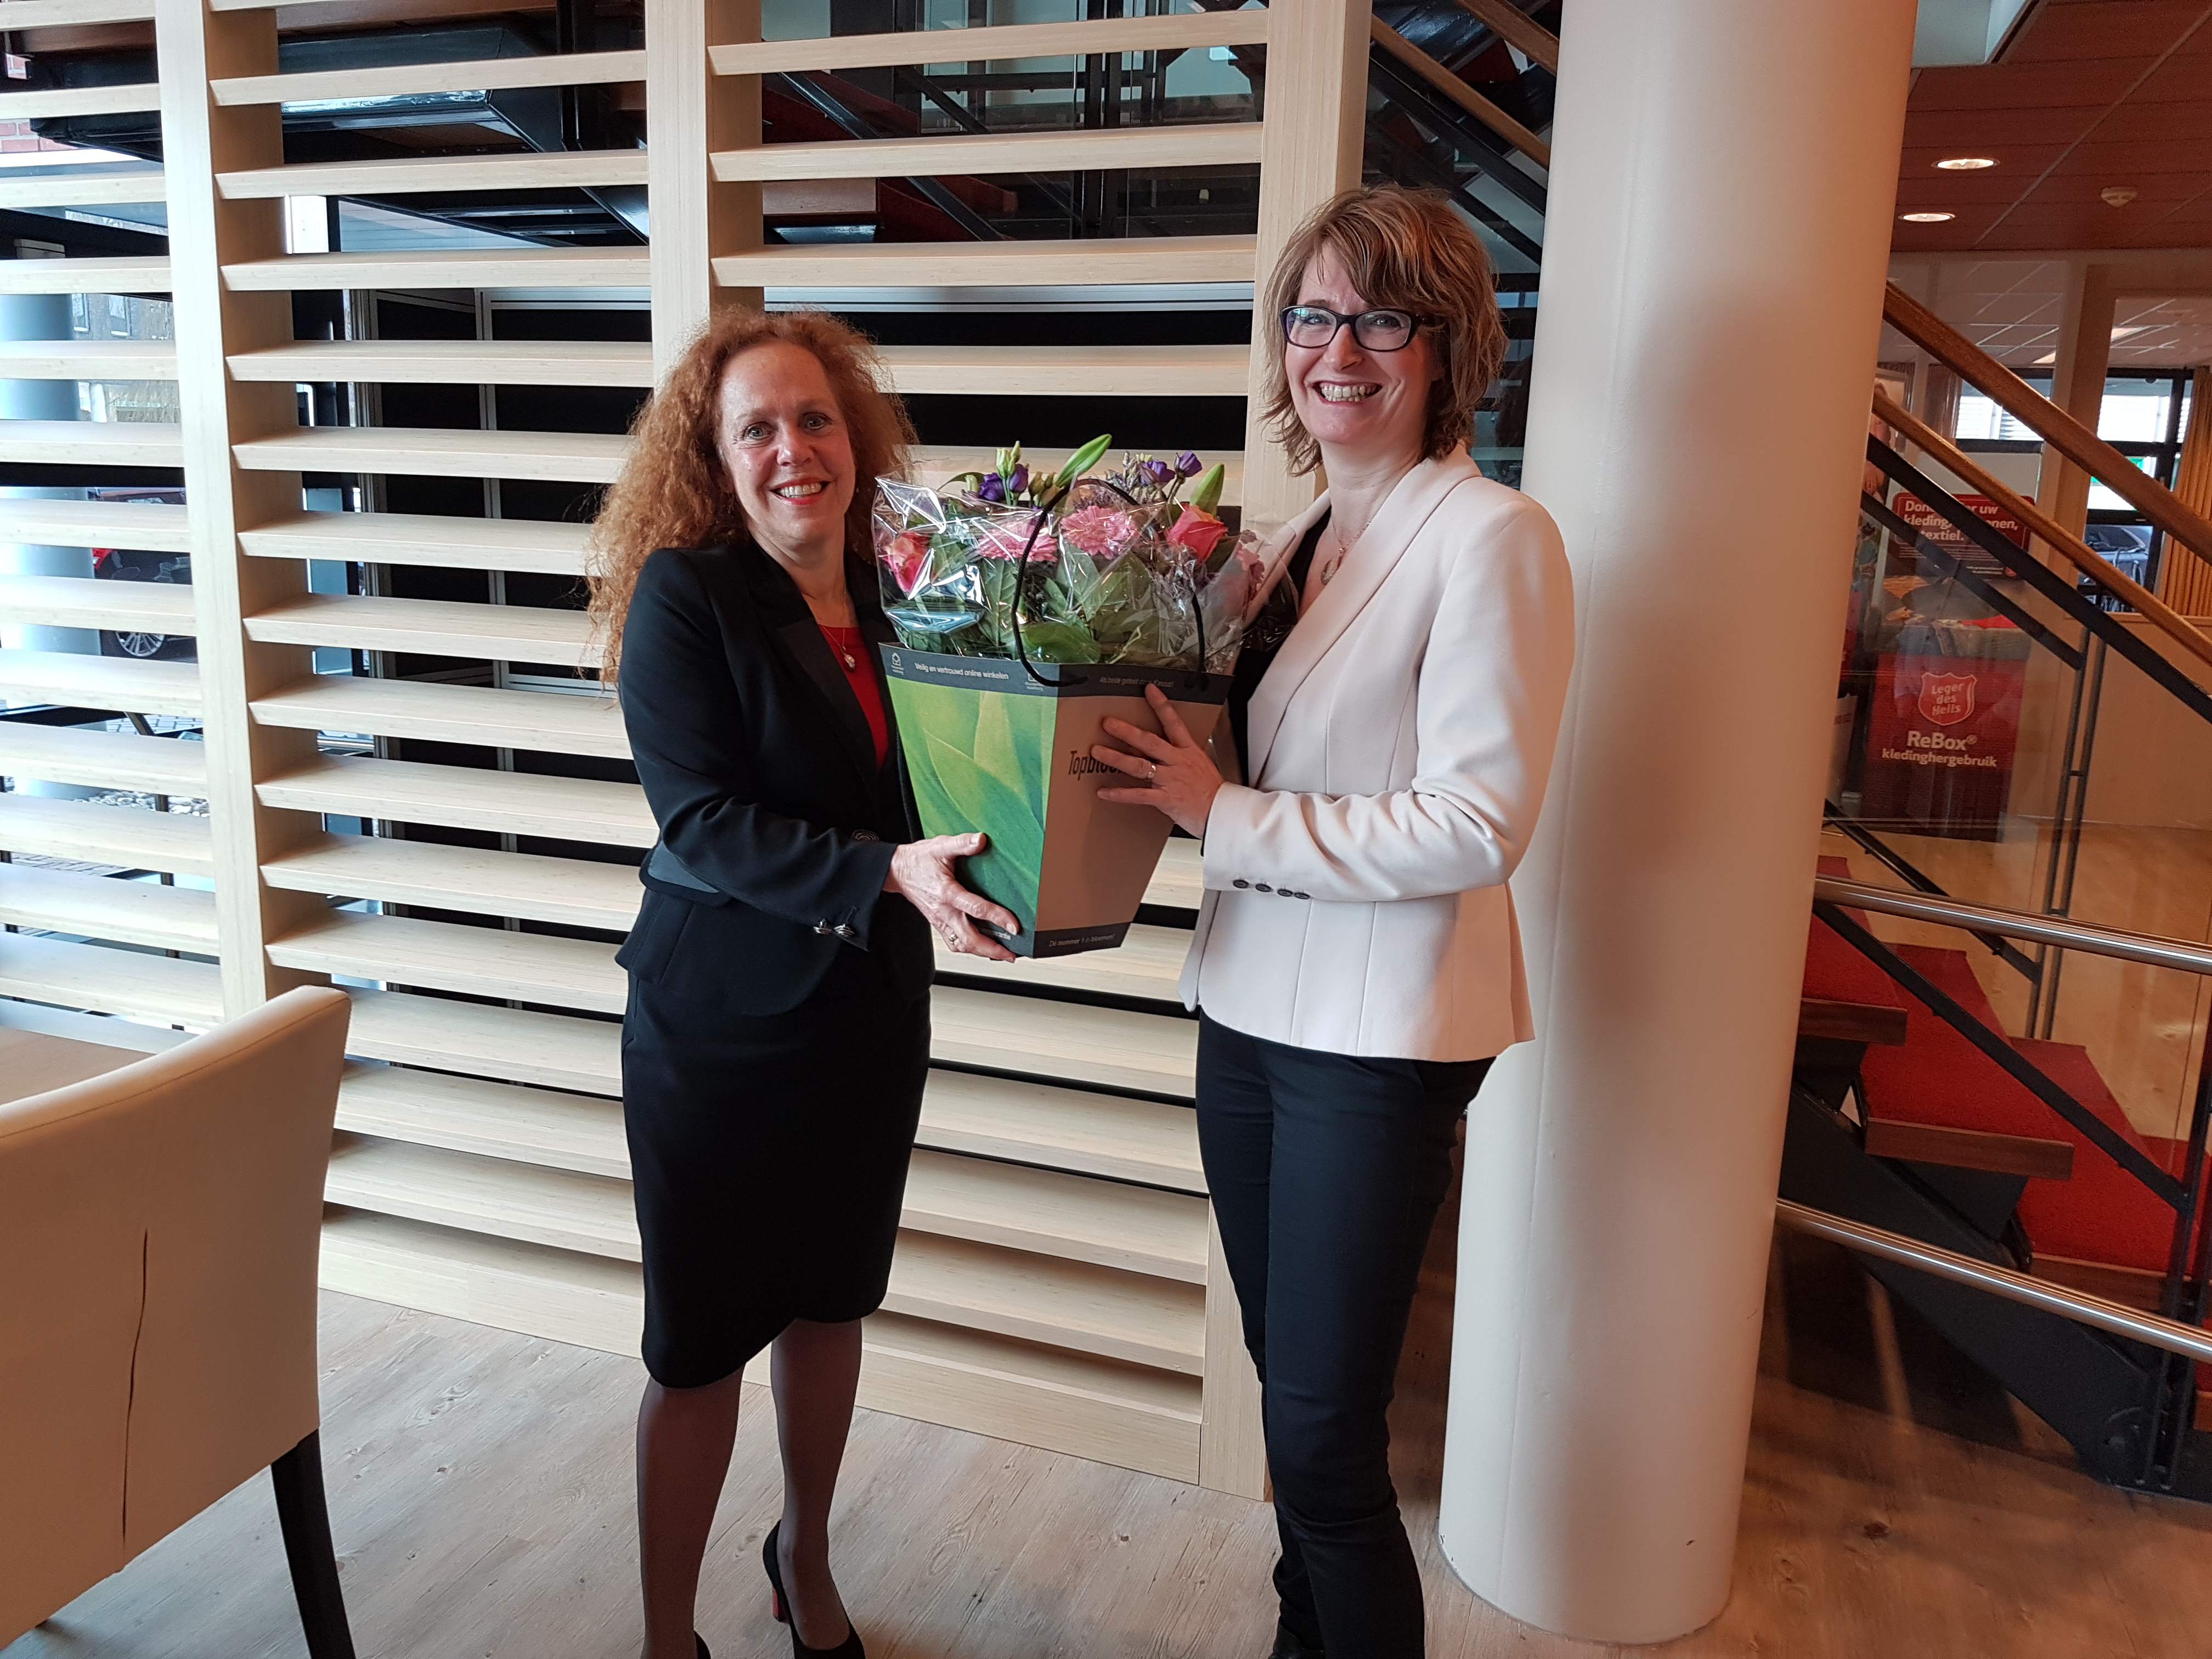 Nieuwe franchisenemer Marlies Schoneveld wordt verwelkomd door Sabrina Franken, directeur Uitvaartzorg. Bron: FranchiseFormules.NL